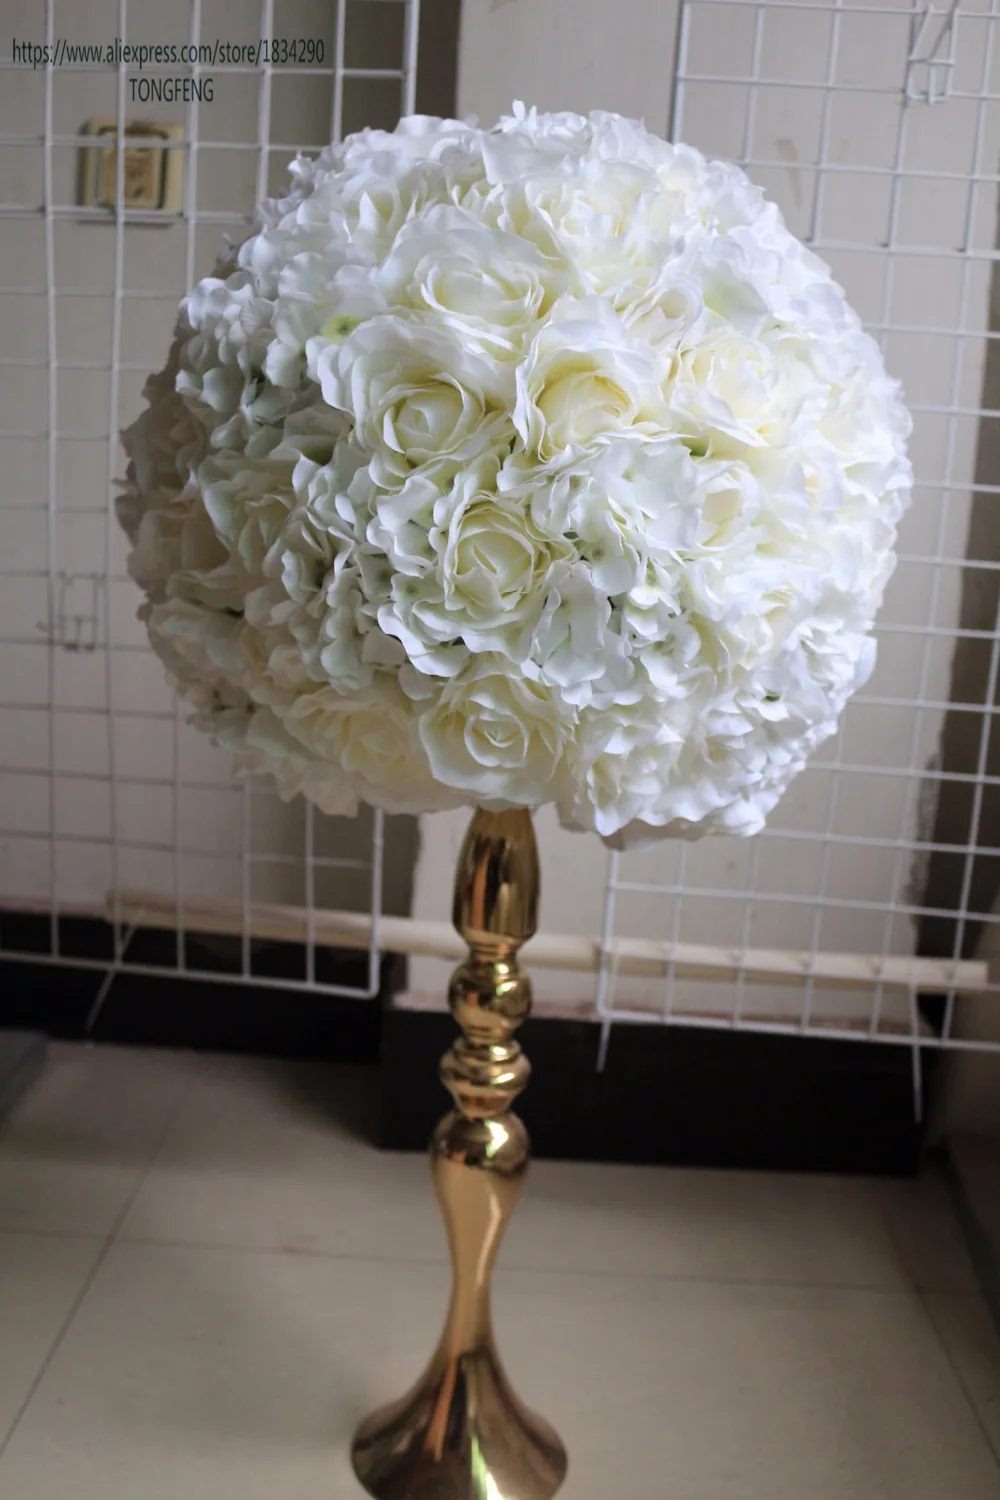 38 см свадебное украшение искусственное 2/3 круглый цветок шар для свадебного стола центральный цветок настенный фон украшение TONGFENG